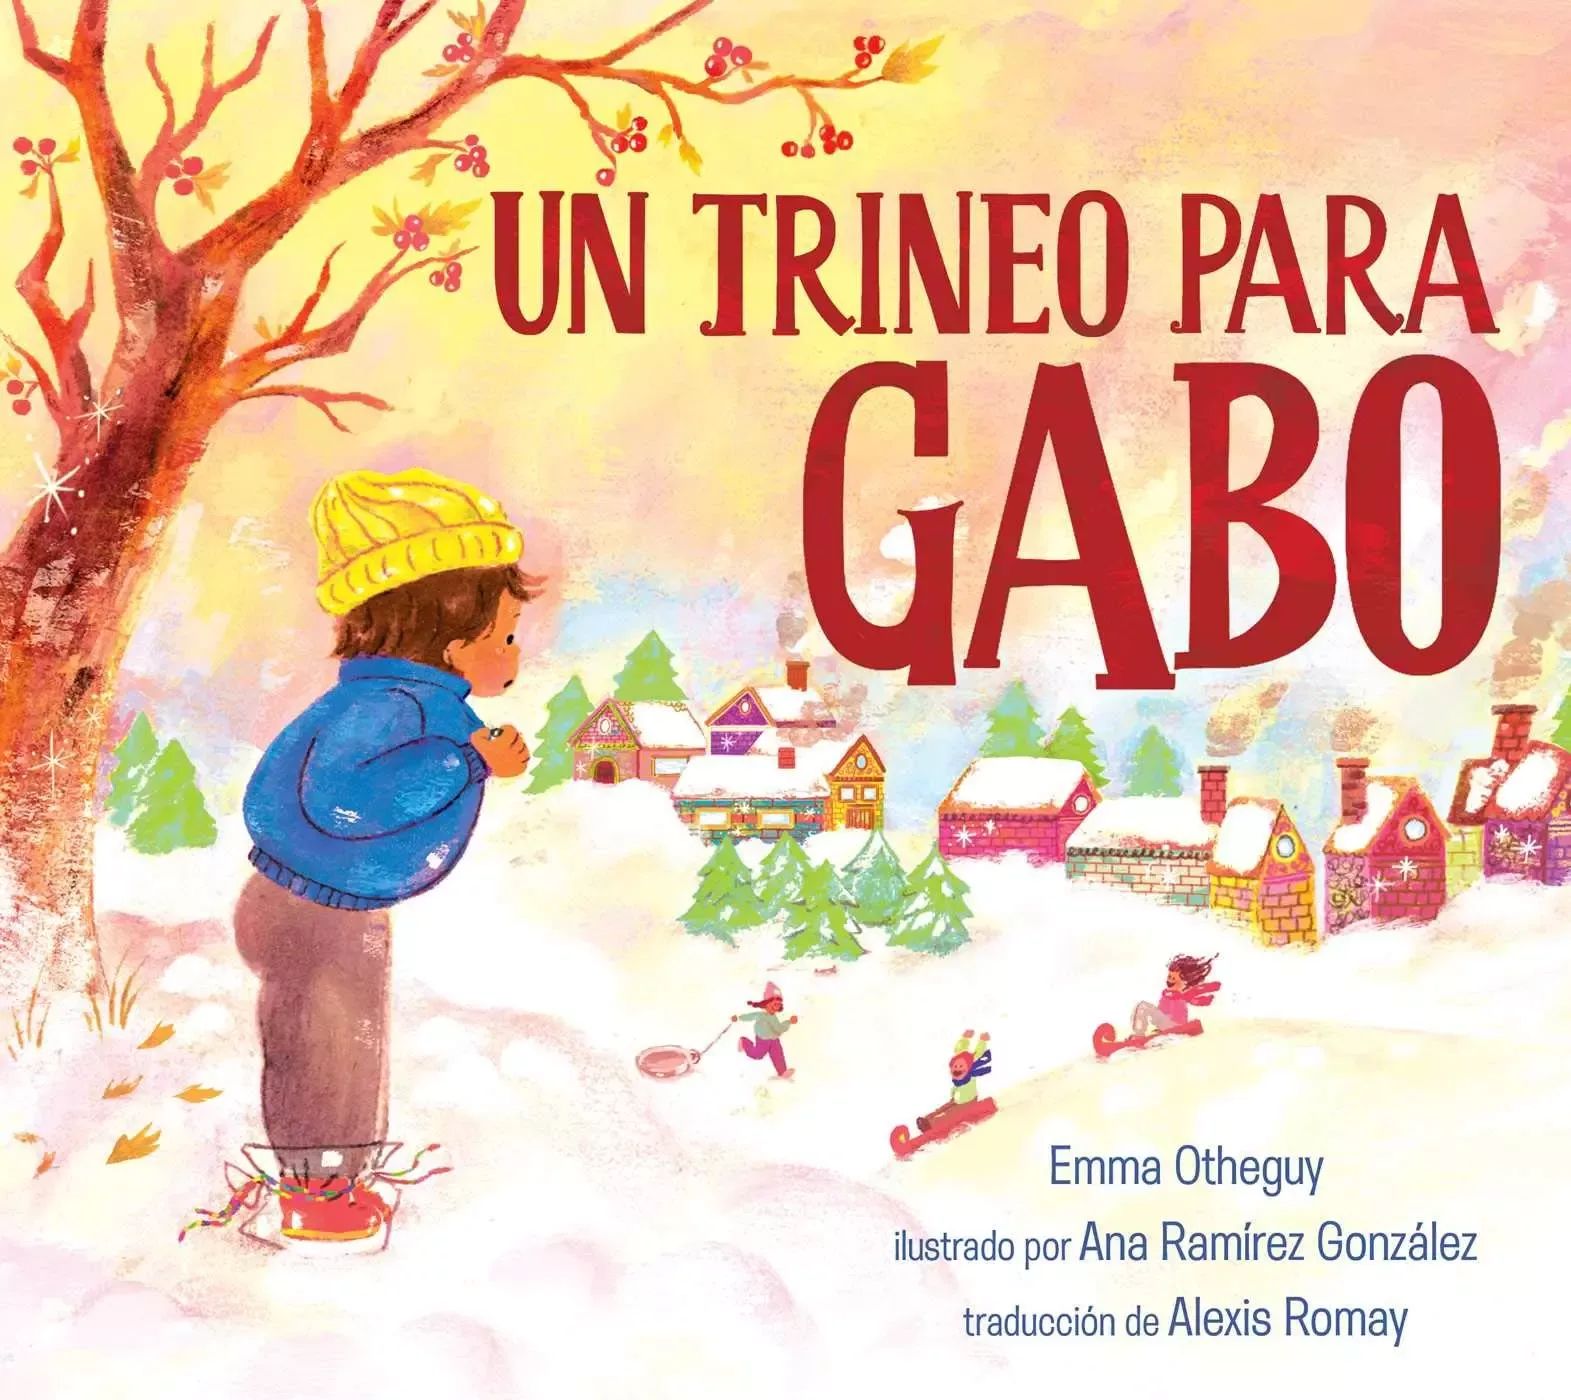 Cover of Un trineo para Gabo